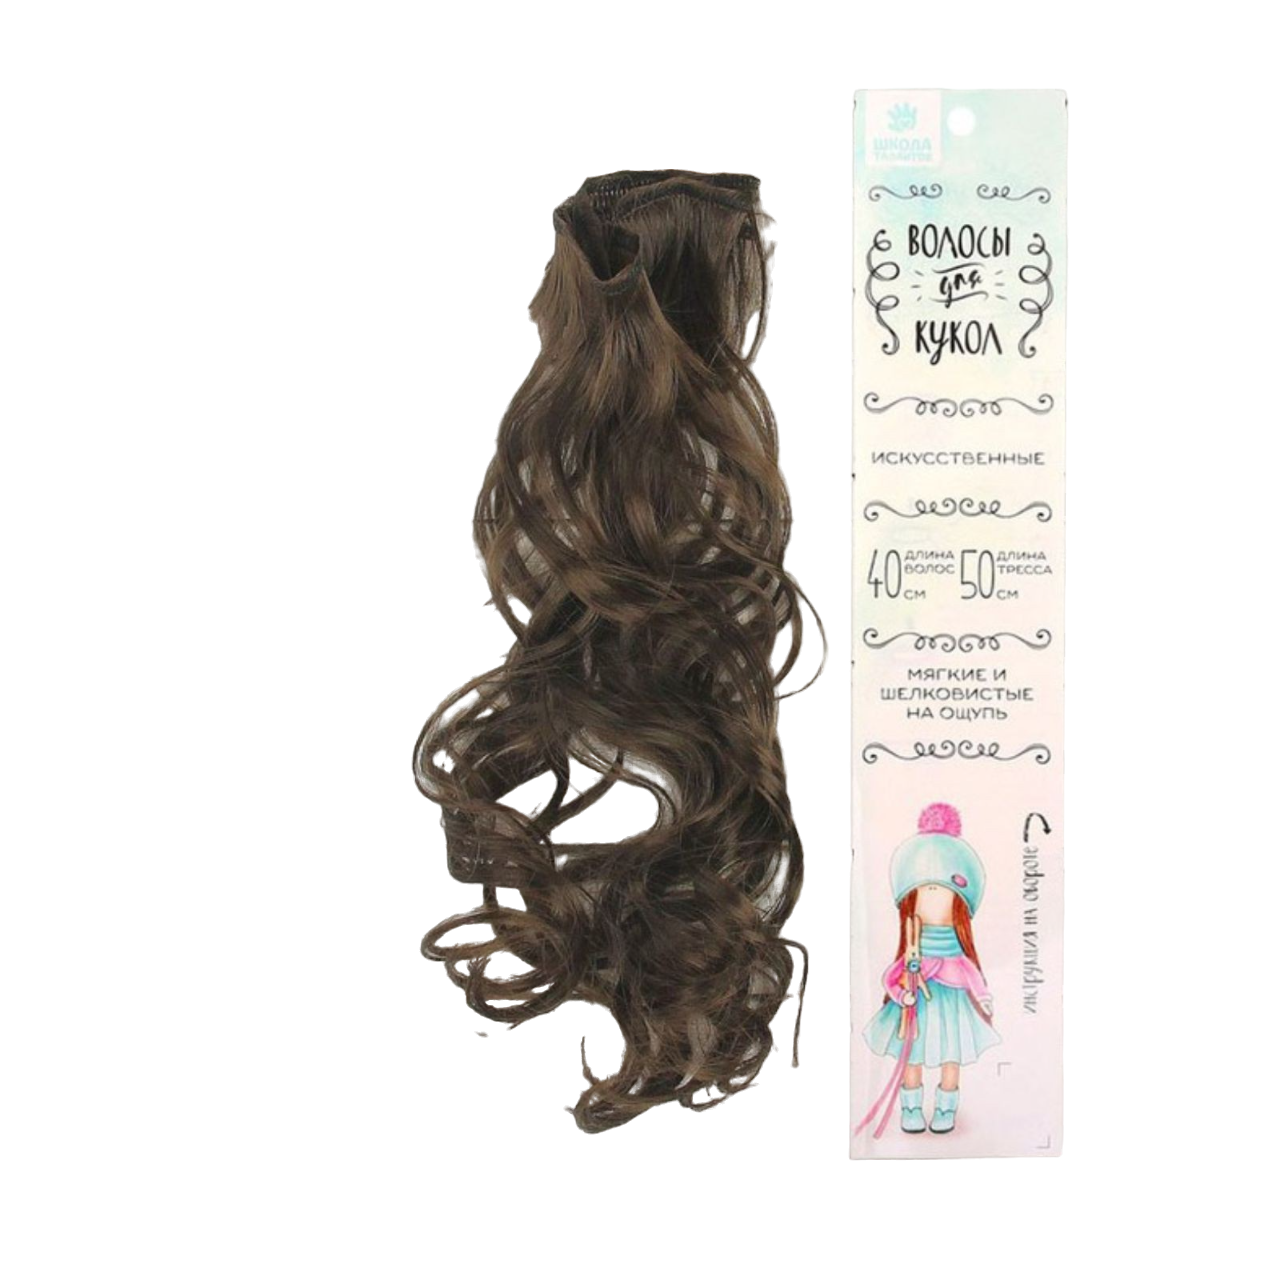 Волосы-тресс для кукол Кудри , цвет: №8, длина волос 40 см, ширина 50 см, арт. 2294363